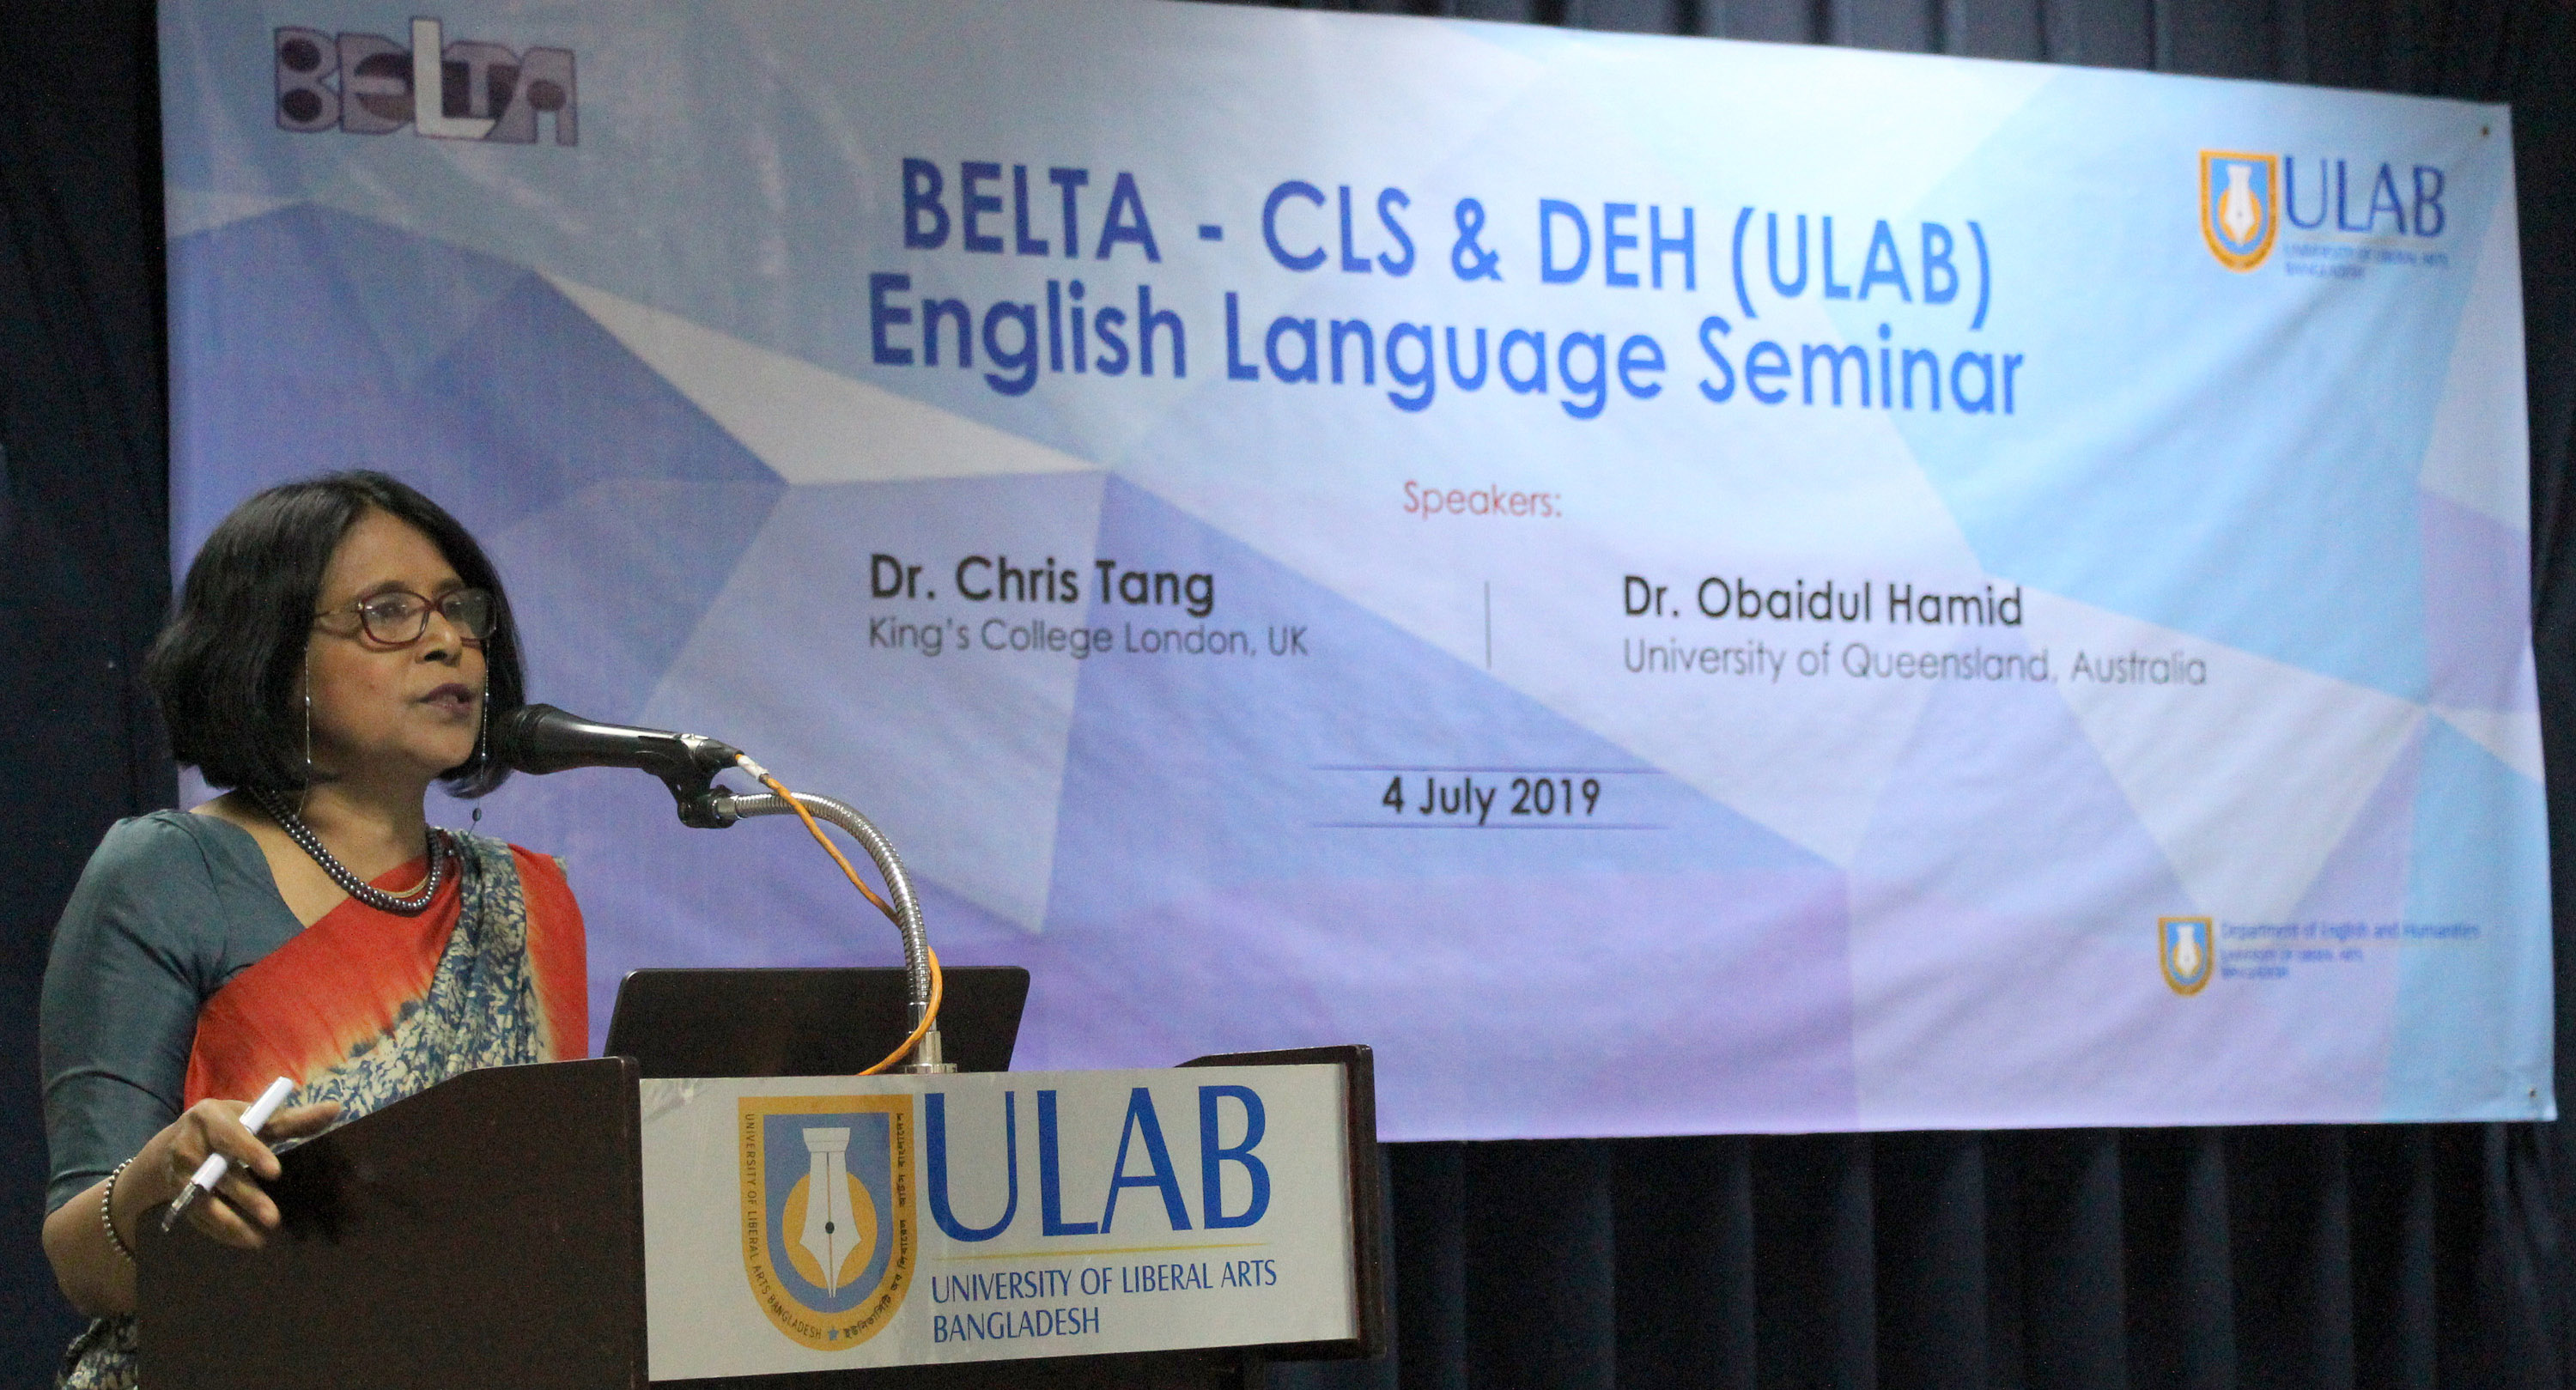 BELTA - CLS & DEH (ULAB) English Language Seminar